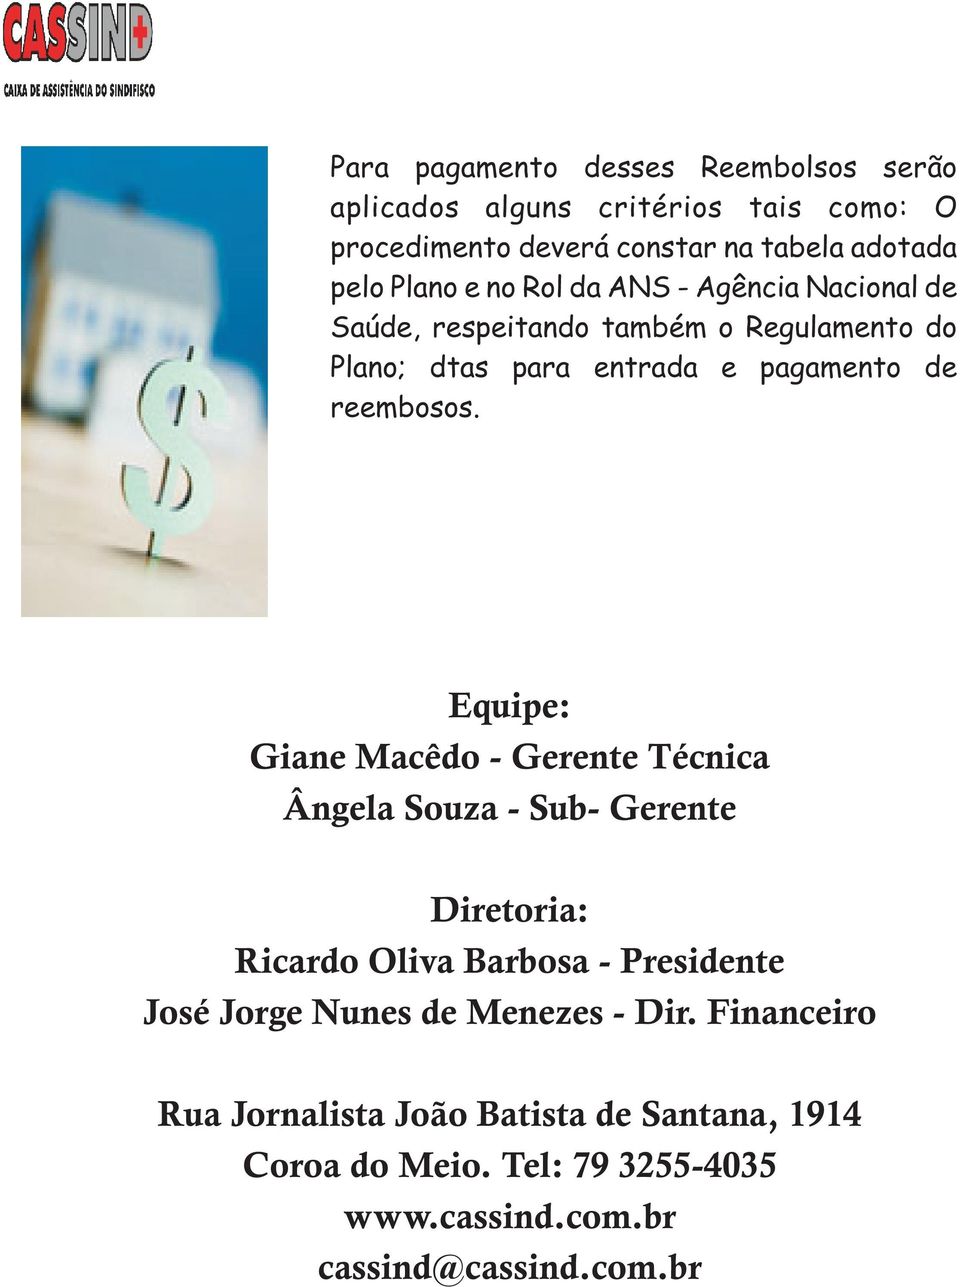 Equipe: Giane Macêdo - Gerente Técnica Ângela Souza - Sub- Gerente Diretoria: Ricardo Oliva Barbosa - Presidente José Jorge Nunes de